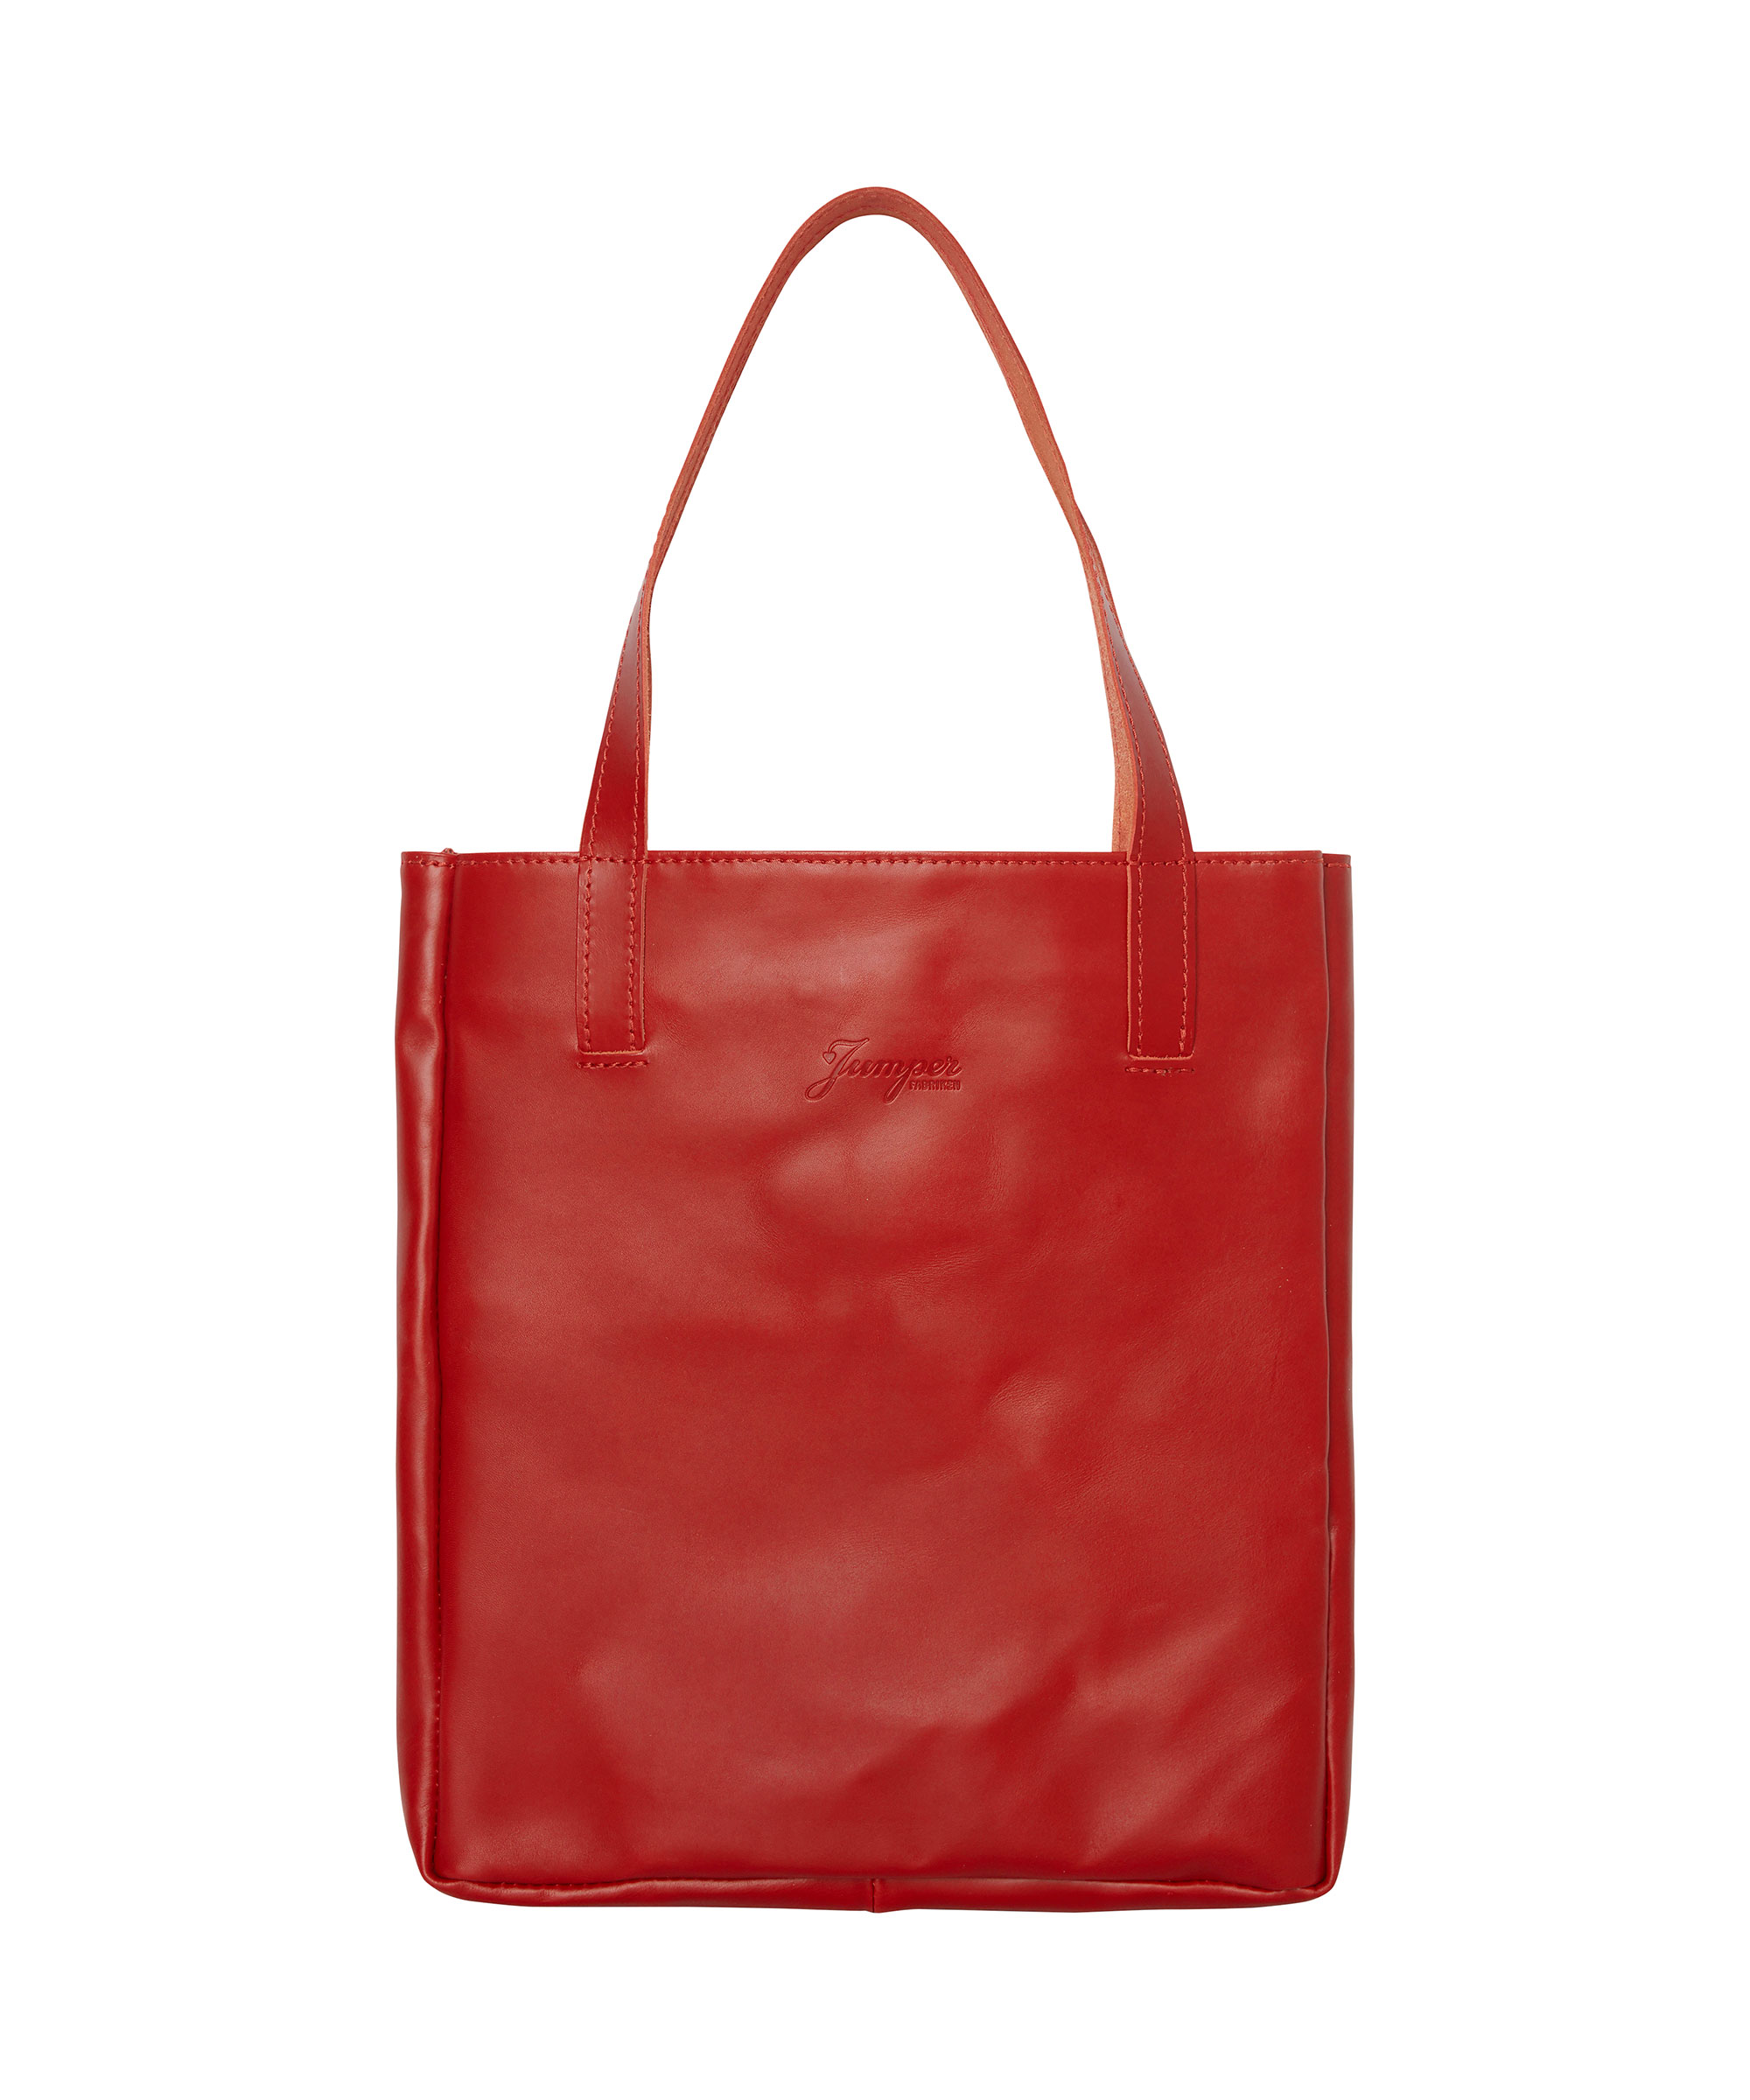 Bag Tote Red